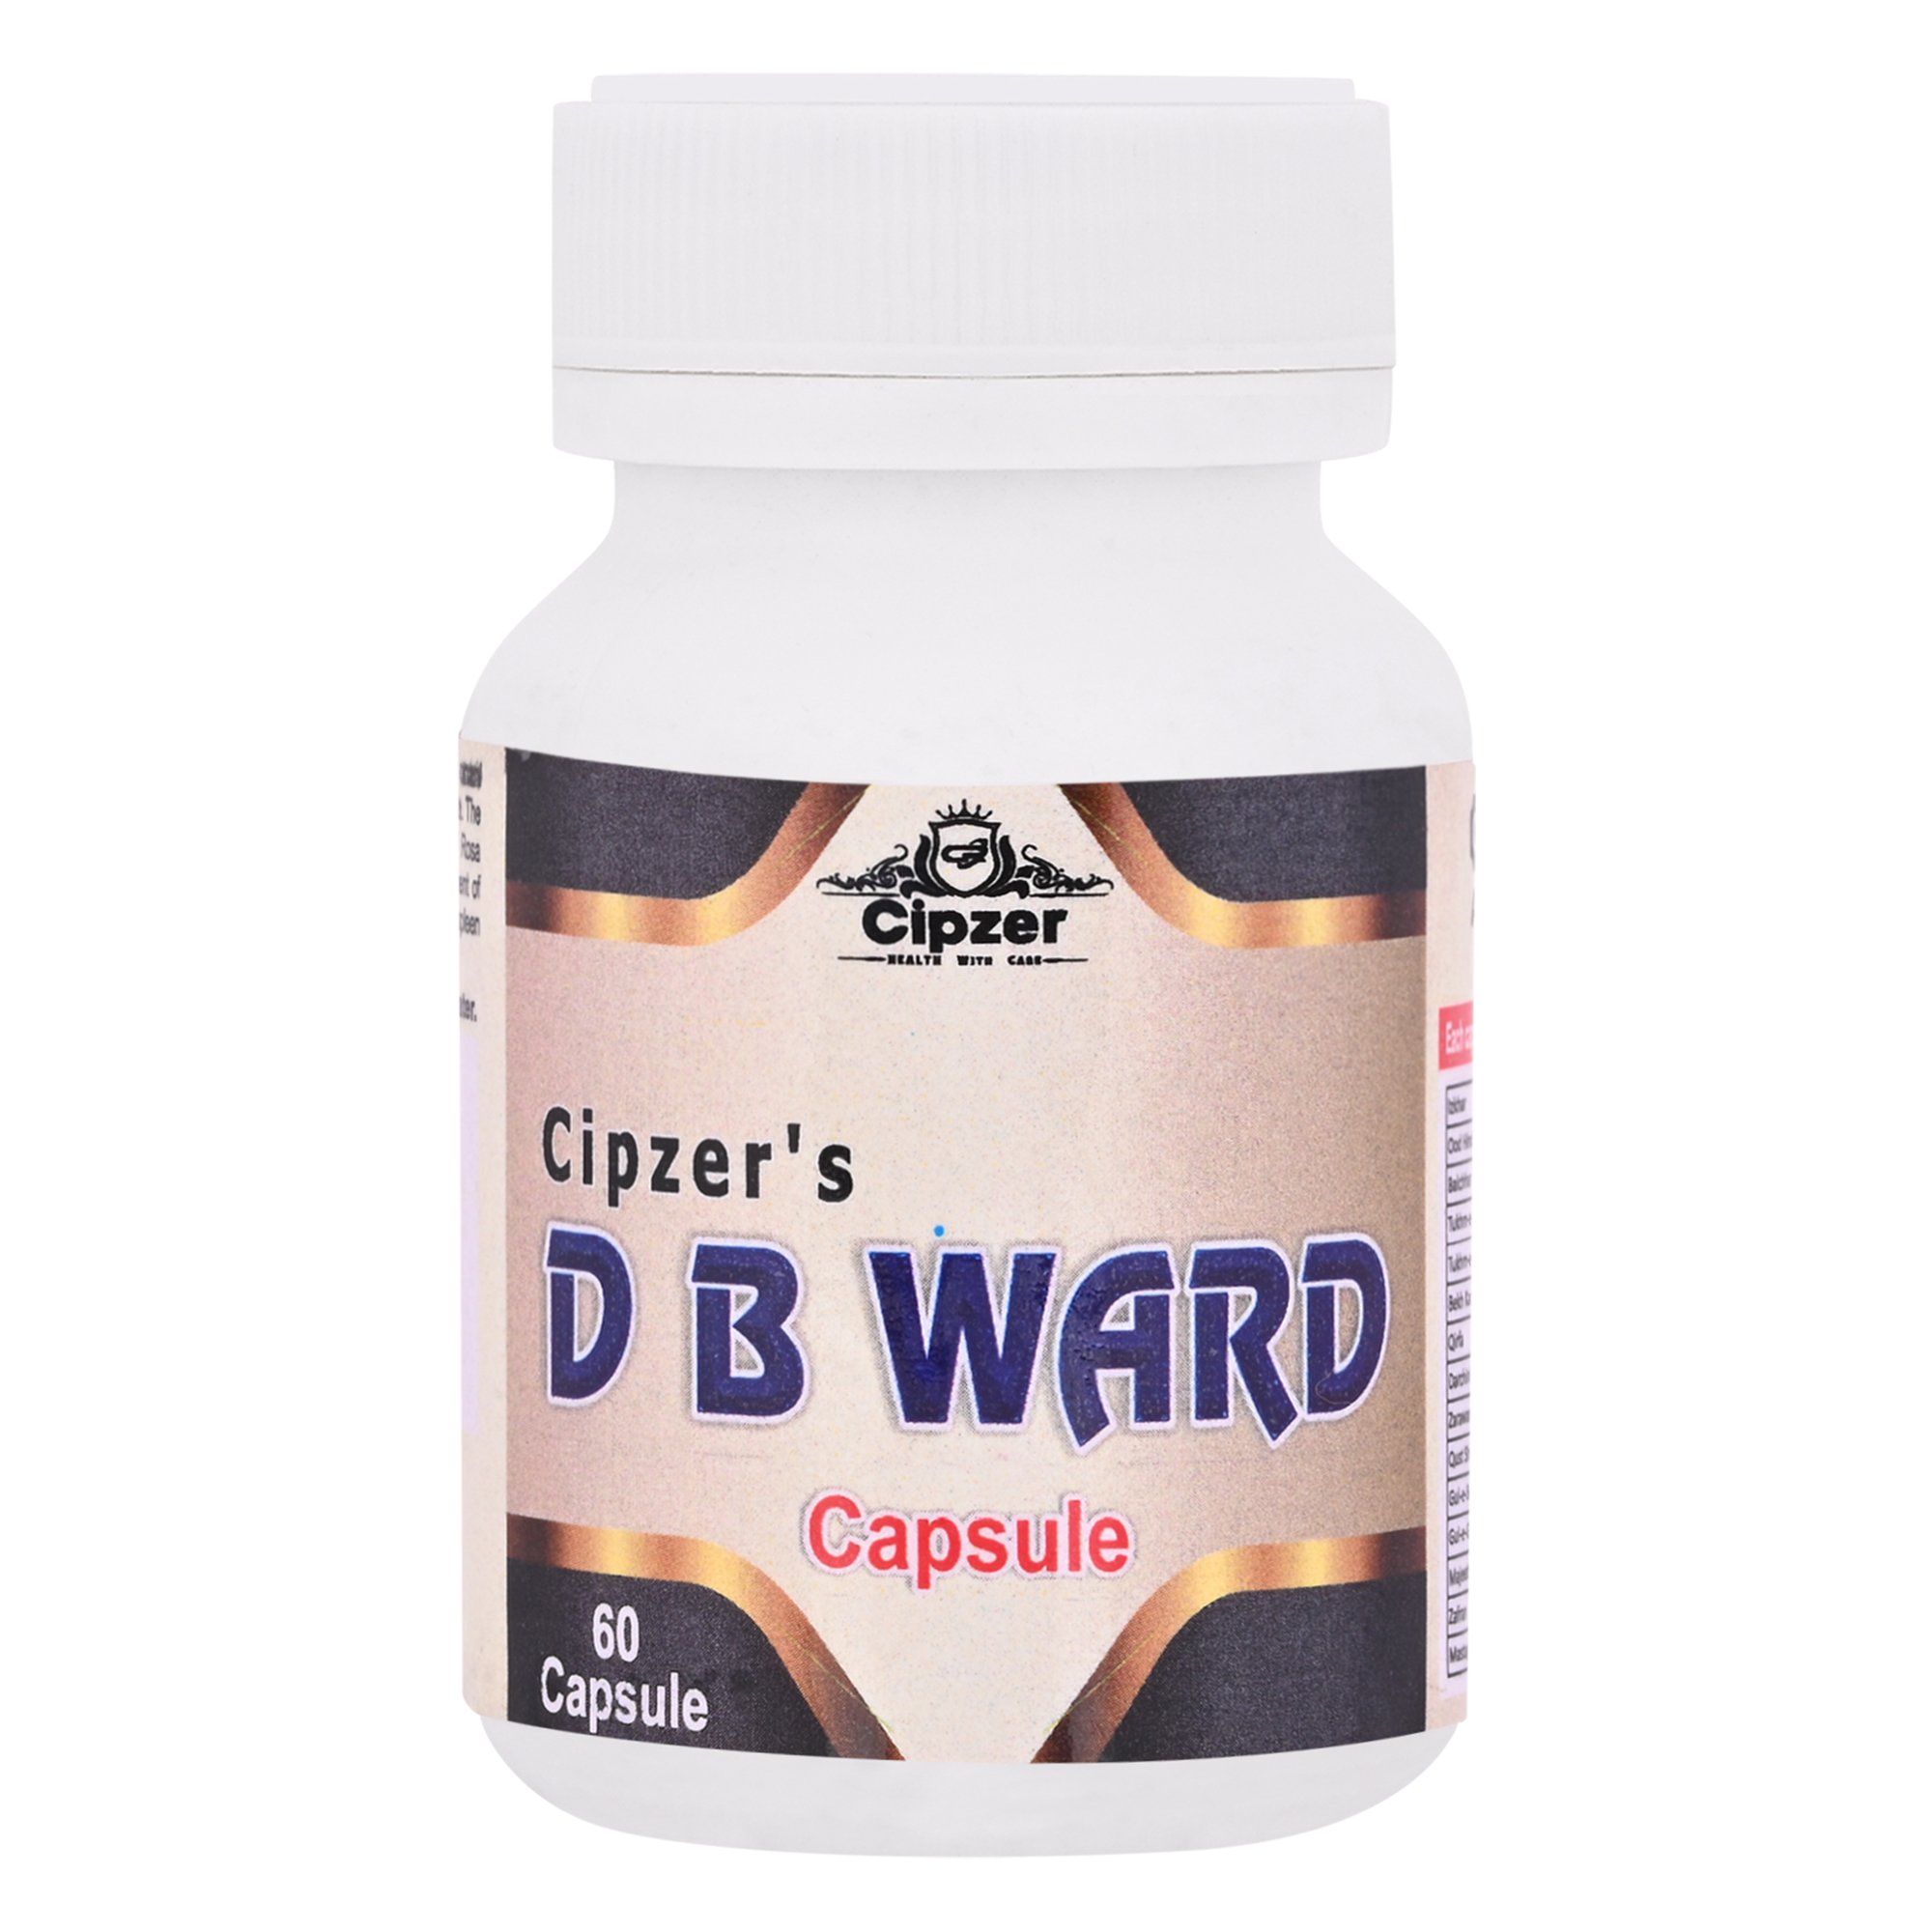 Buy Cipzer D.B. Ward Capsule at Best Price Online